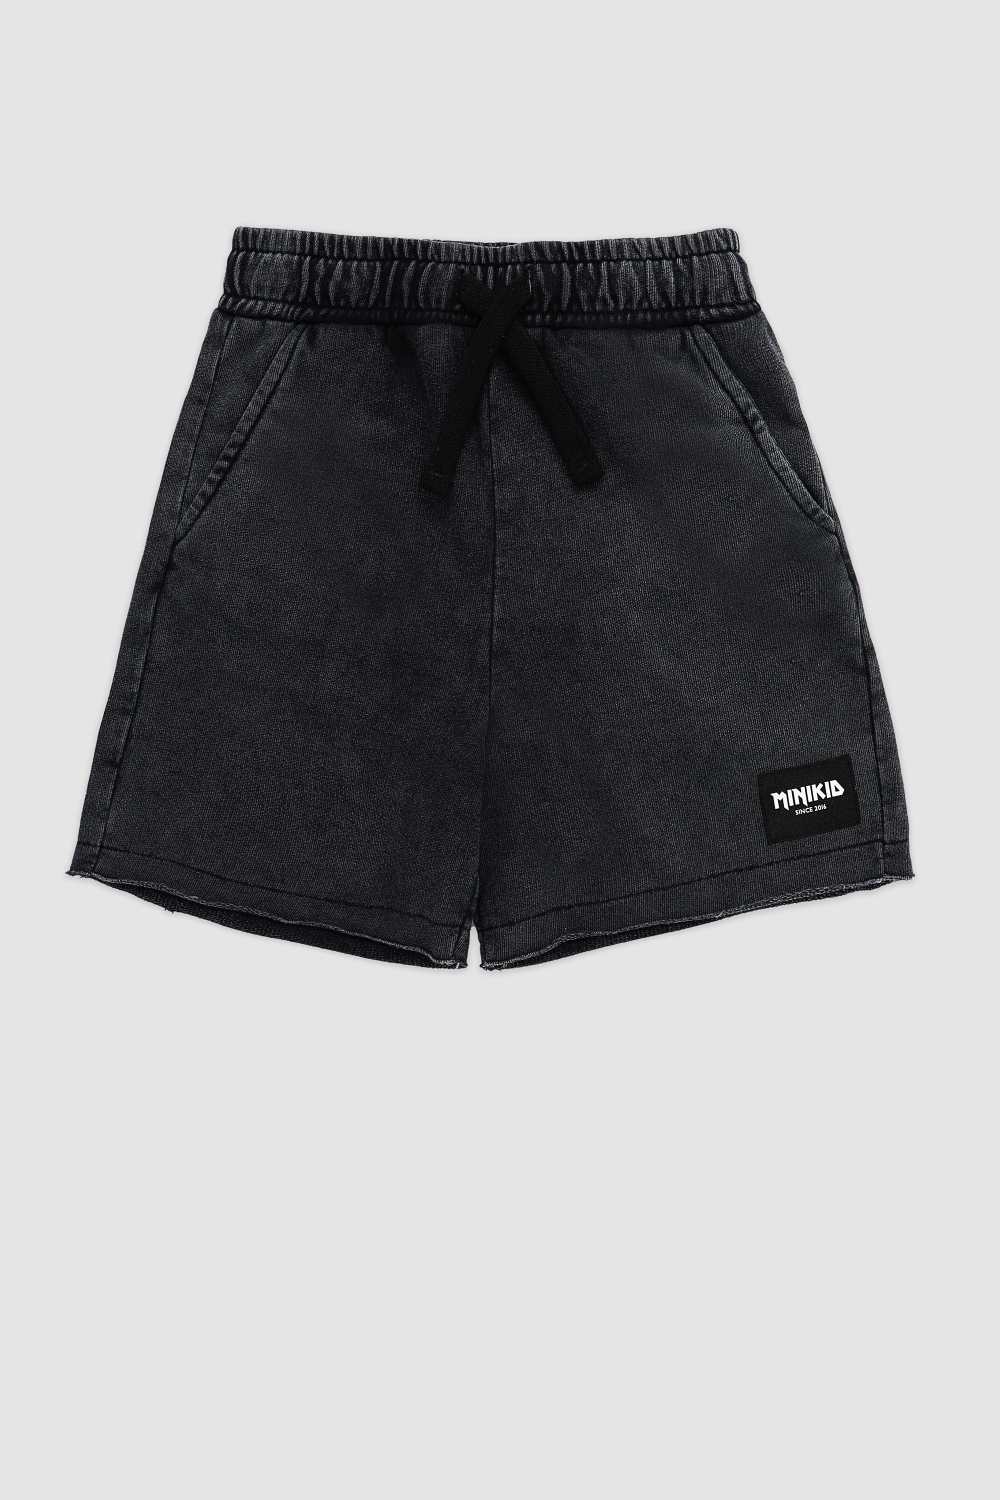 Vintage Black Comfort Fit Shorts